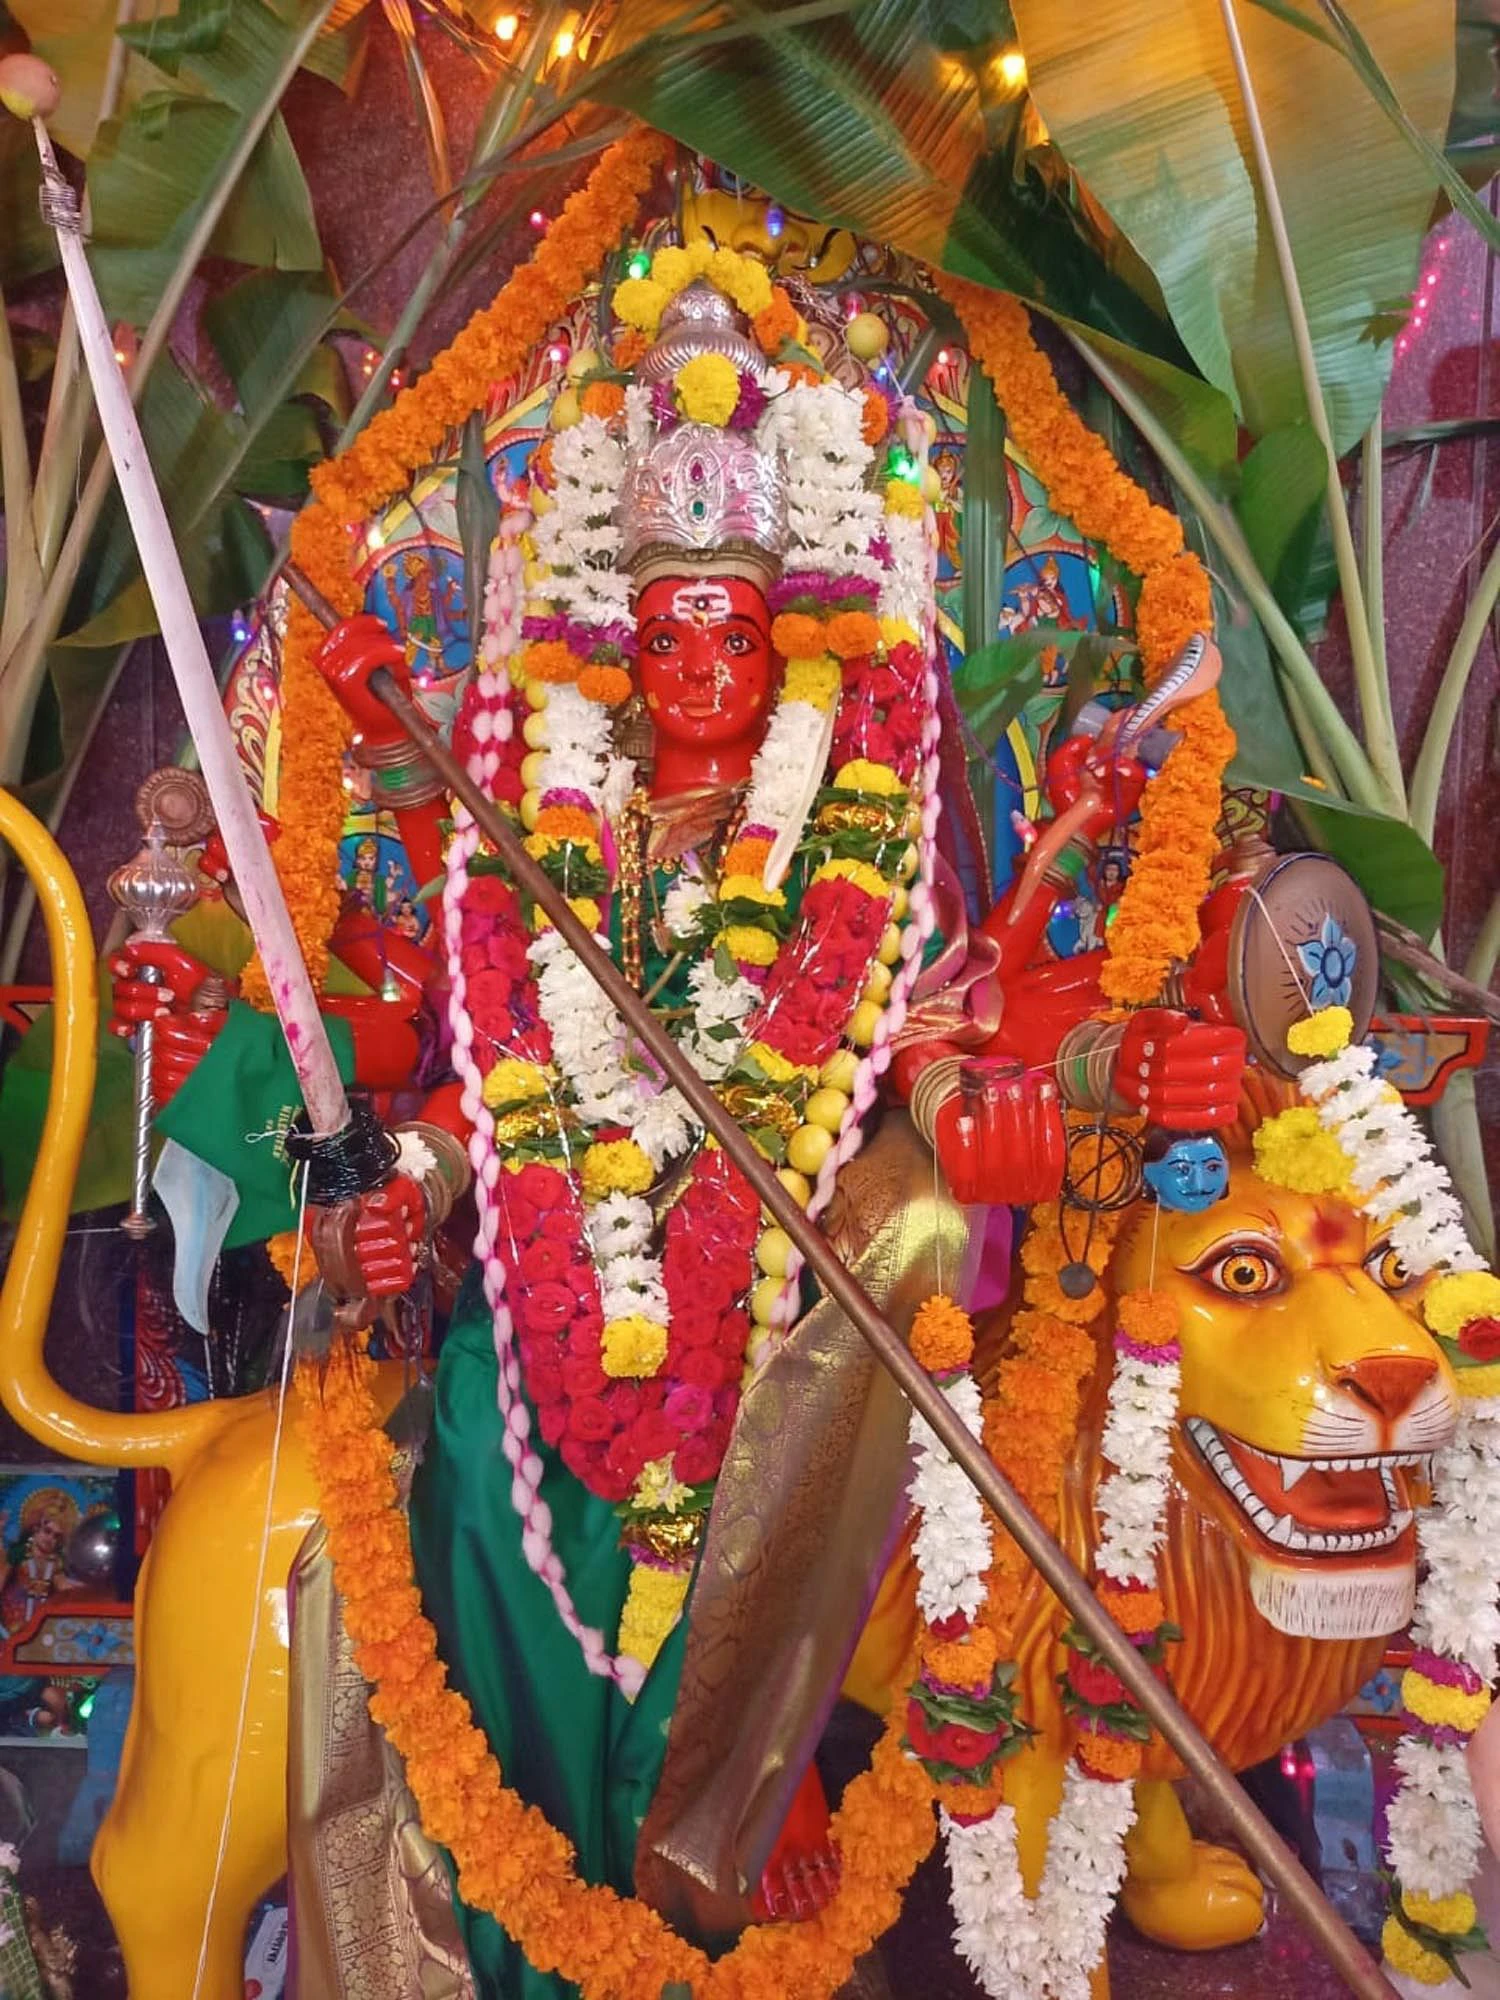 ಹಿರೇಬಾಗೇವಾಡಿ: 25 ವರ್ಷಗಳ ಬಳಿಕ ನಡೆಯುತ್ತಿರುವ ಗ್ರಾಮದೇವಿ ಜಾತ್ರೆ